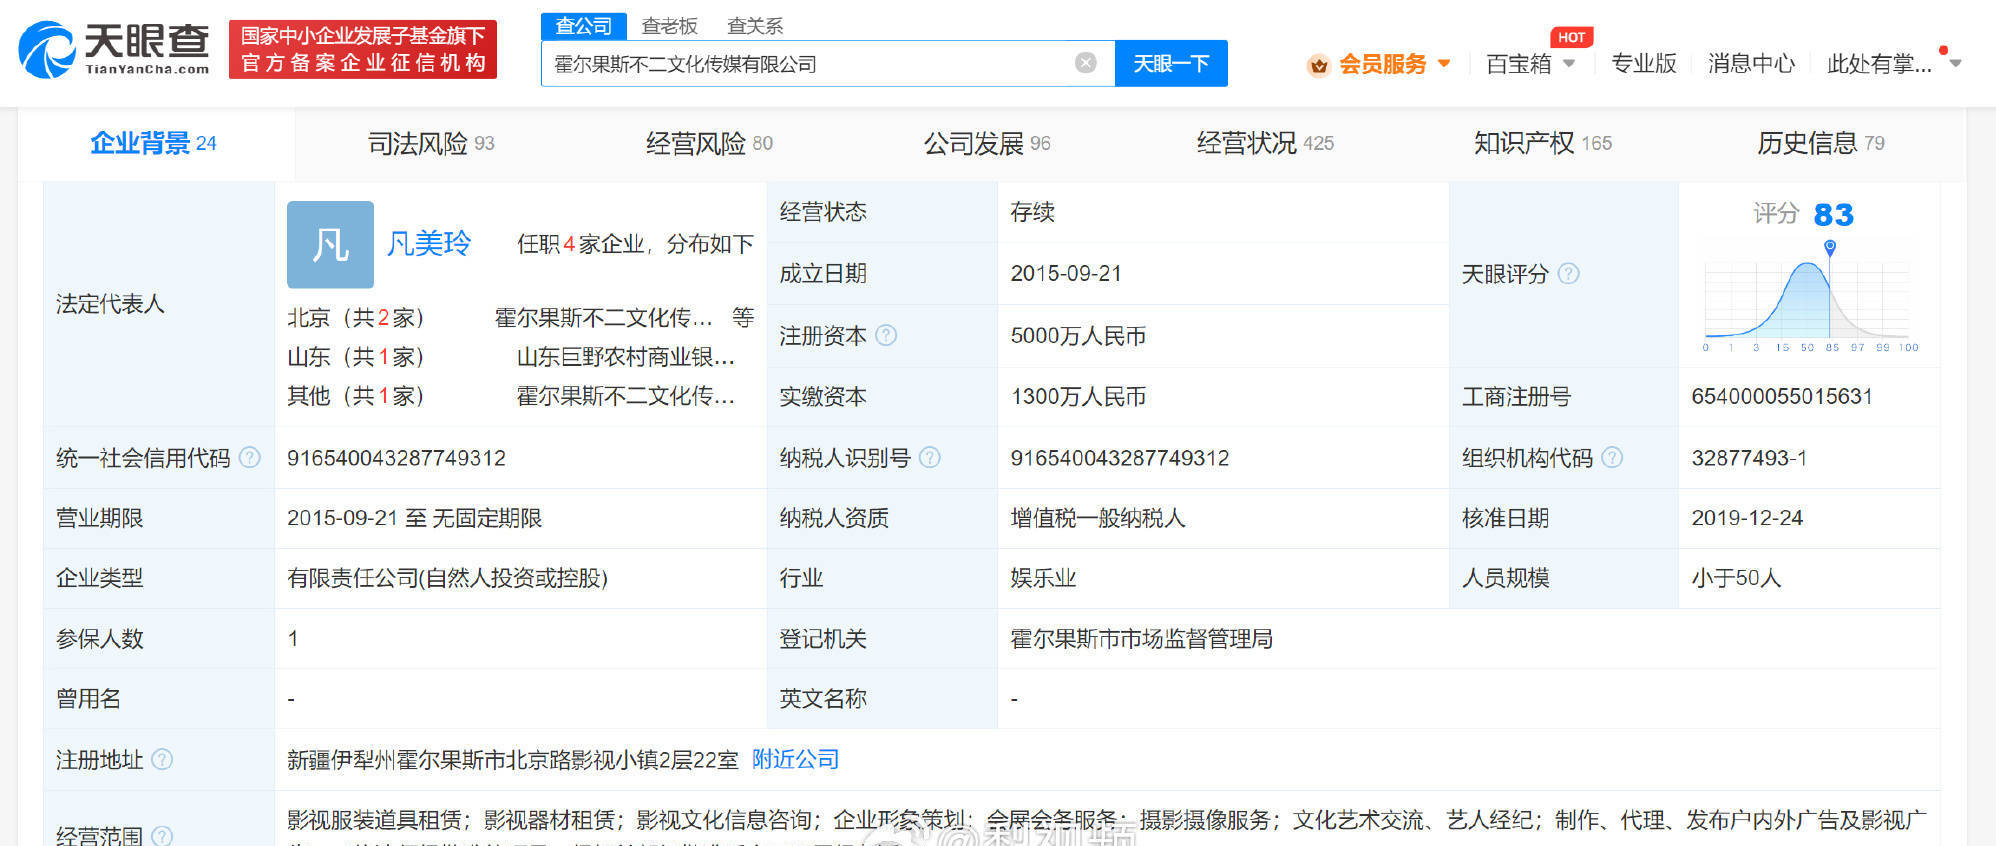 吴秀波及其公司被强制执行 执行标的4.66亿余元